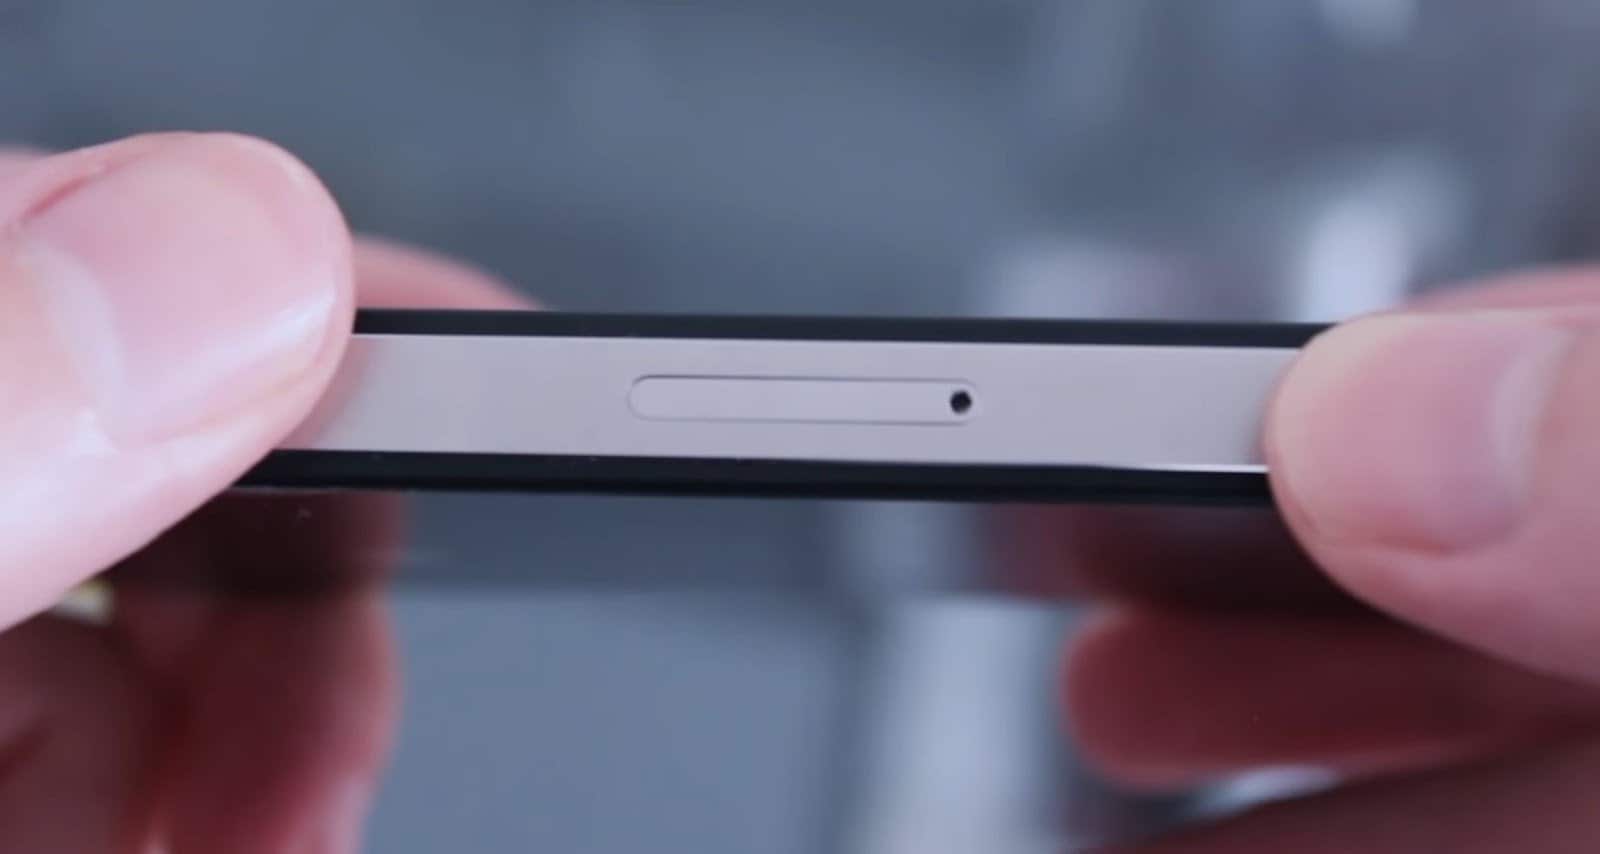 Cómo colocar una SIM Card en una tablet Huawei